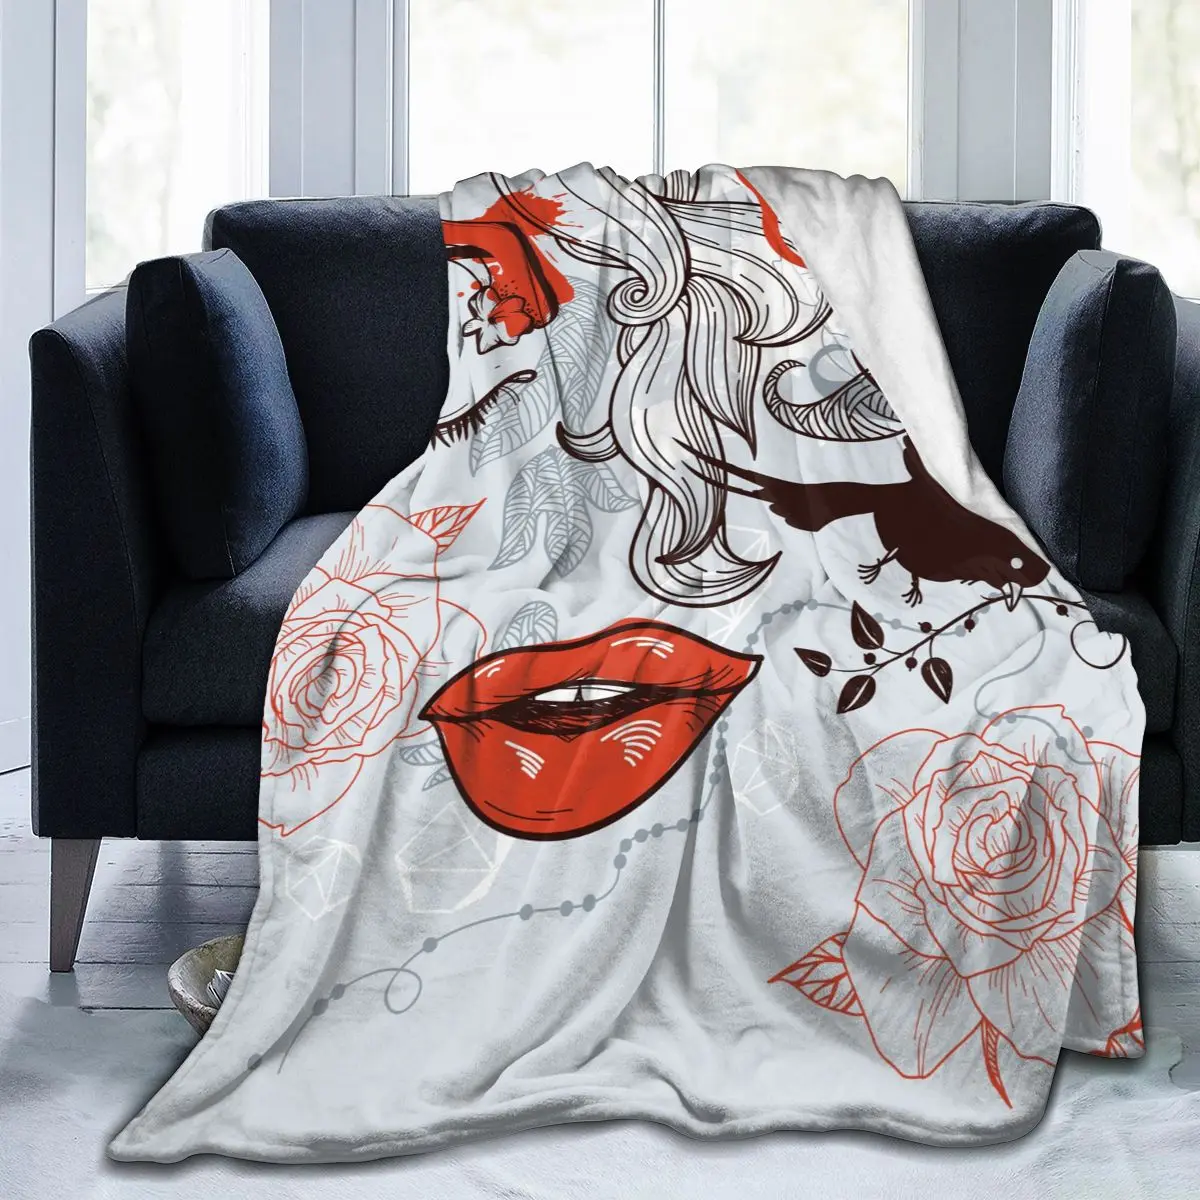 

Мягкое теплое Флисовое одеяло, легкий тонкий фланелевый плед в абстрактном стиле для мужчин и женщин, с изображением роз, цветов, птиц, для з...